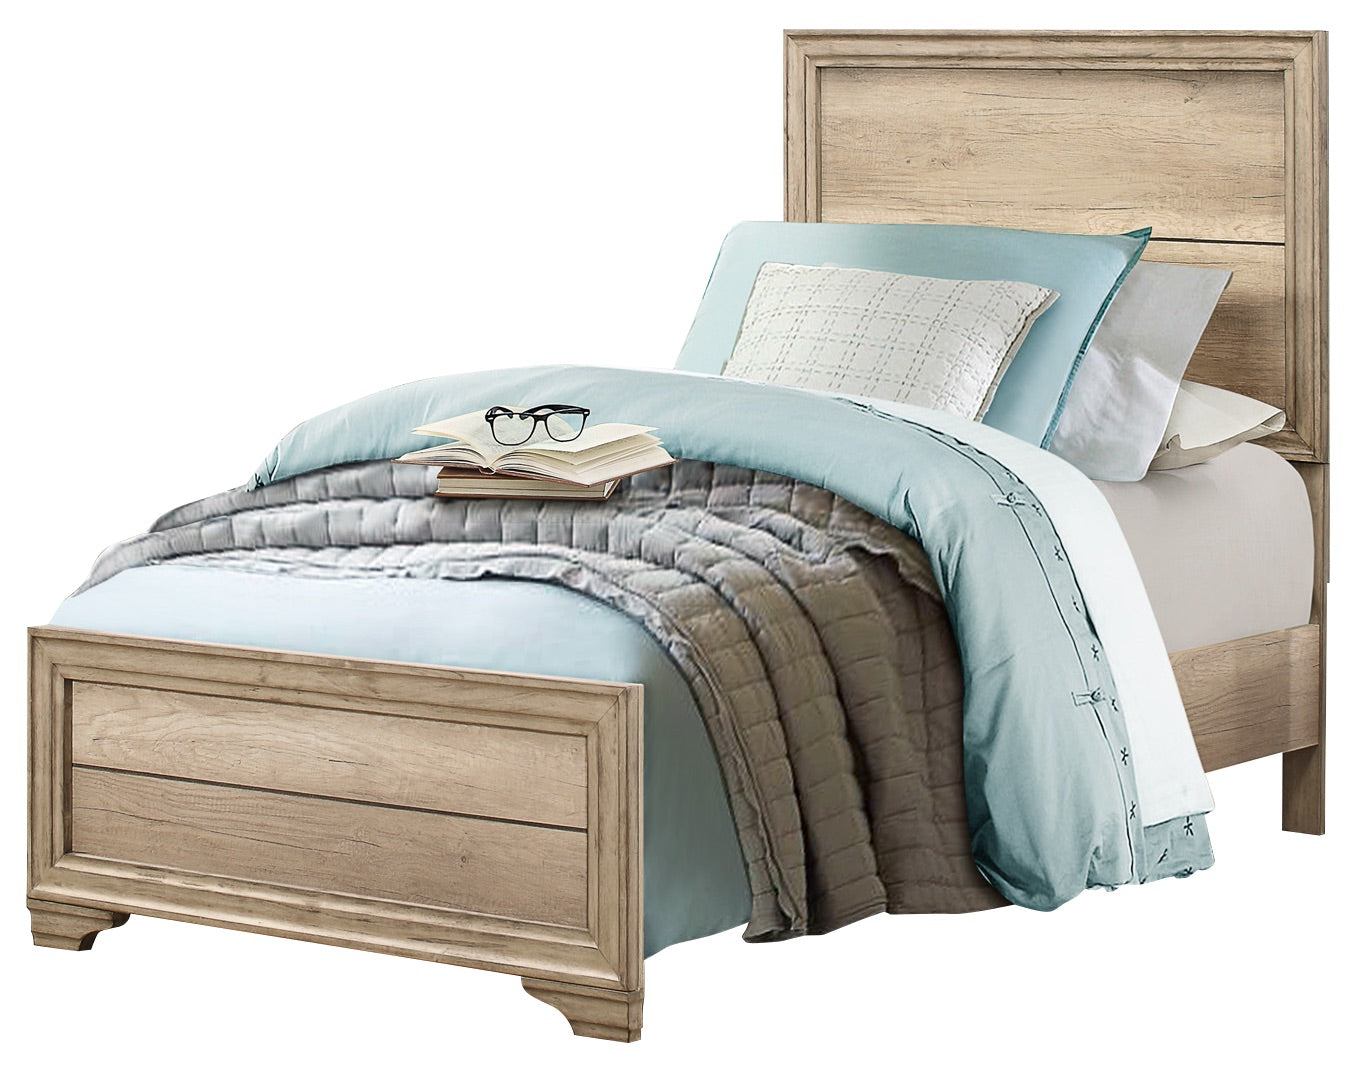 Laudine Rustic 5PC Bedroom Set Twin Bed, Dresser, Mirror, 2 Nightstand in Weather Industrial Wood